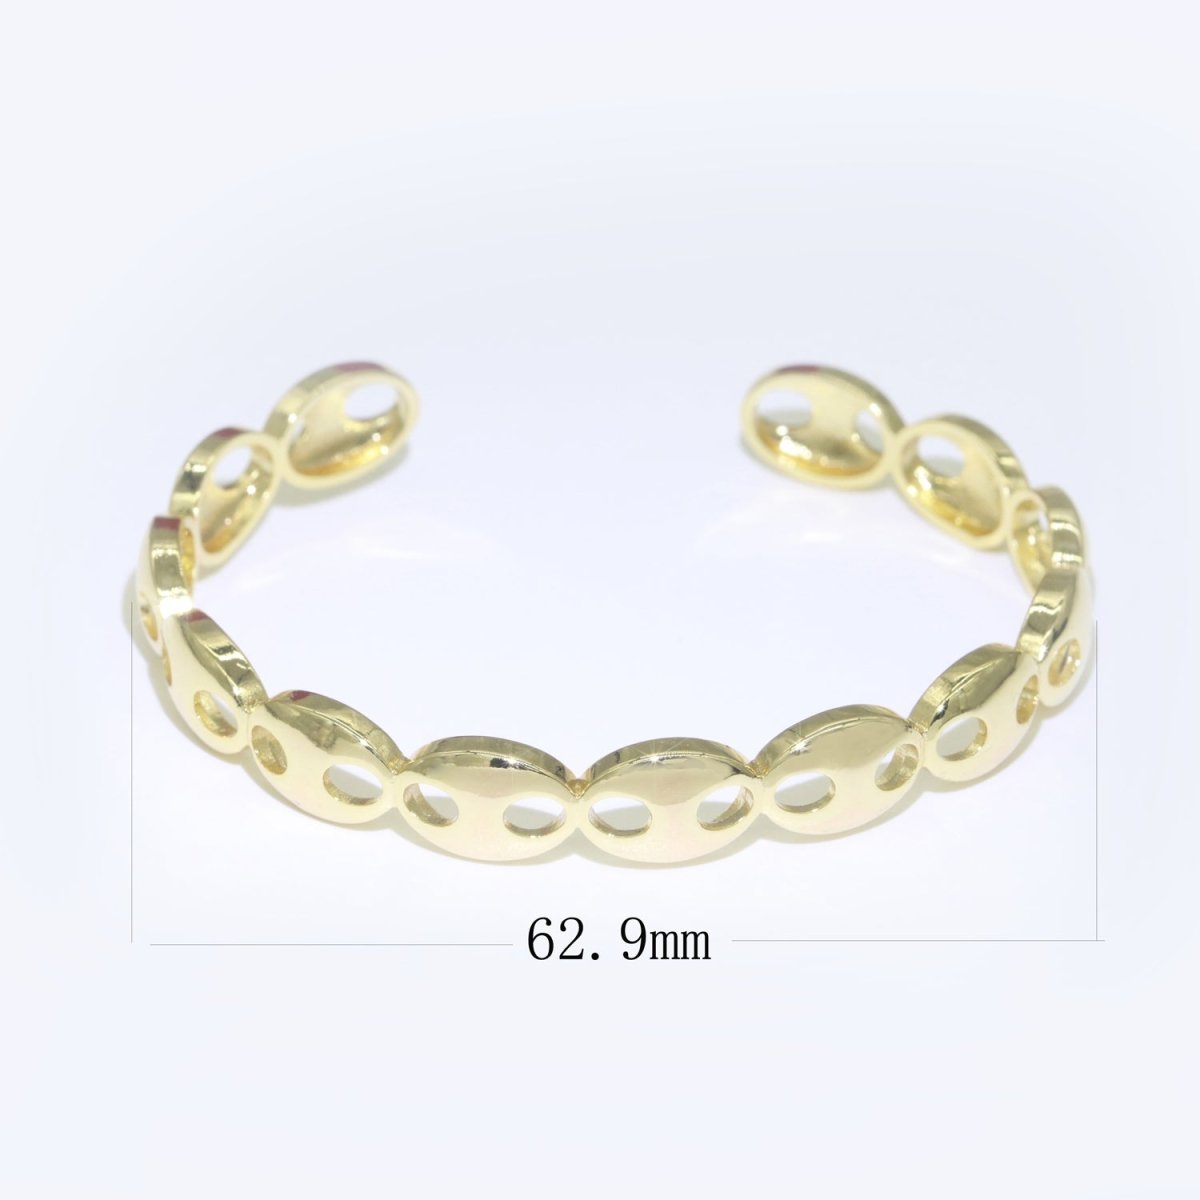 Gold Filled Link Bangle Bracelet, 14K Gold Filled Anchor Link Bracelet Adjustable Cuff Bracelet | WA-055 Clearance Pricing - DLUXCA